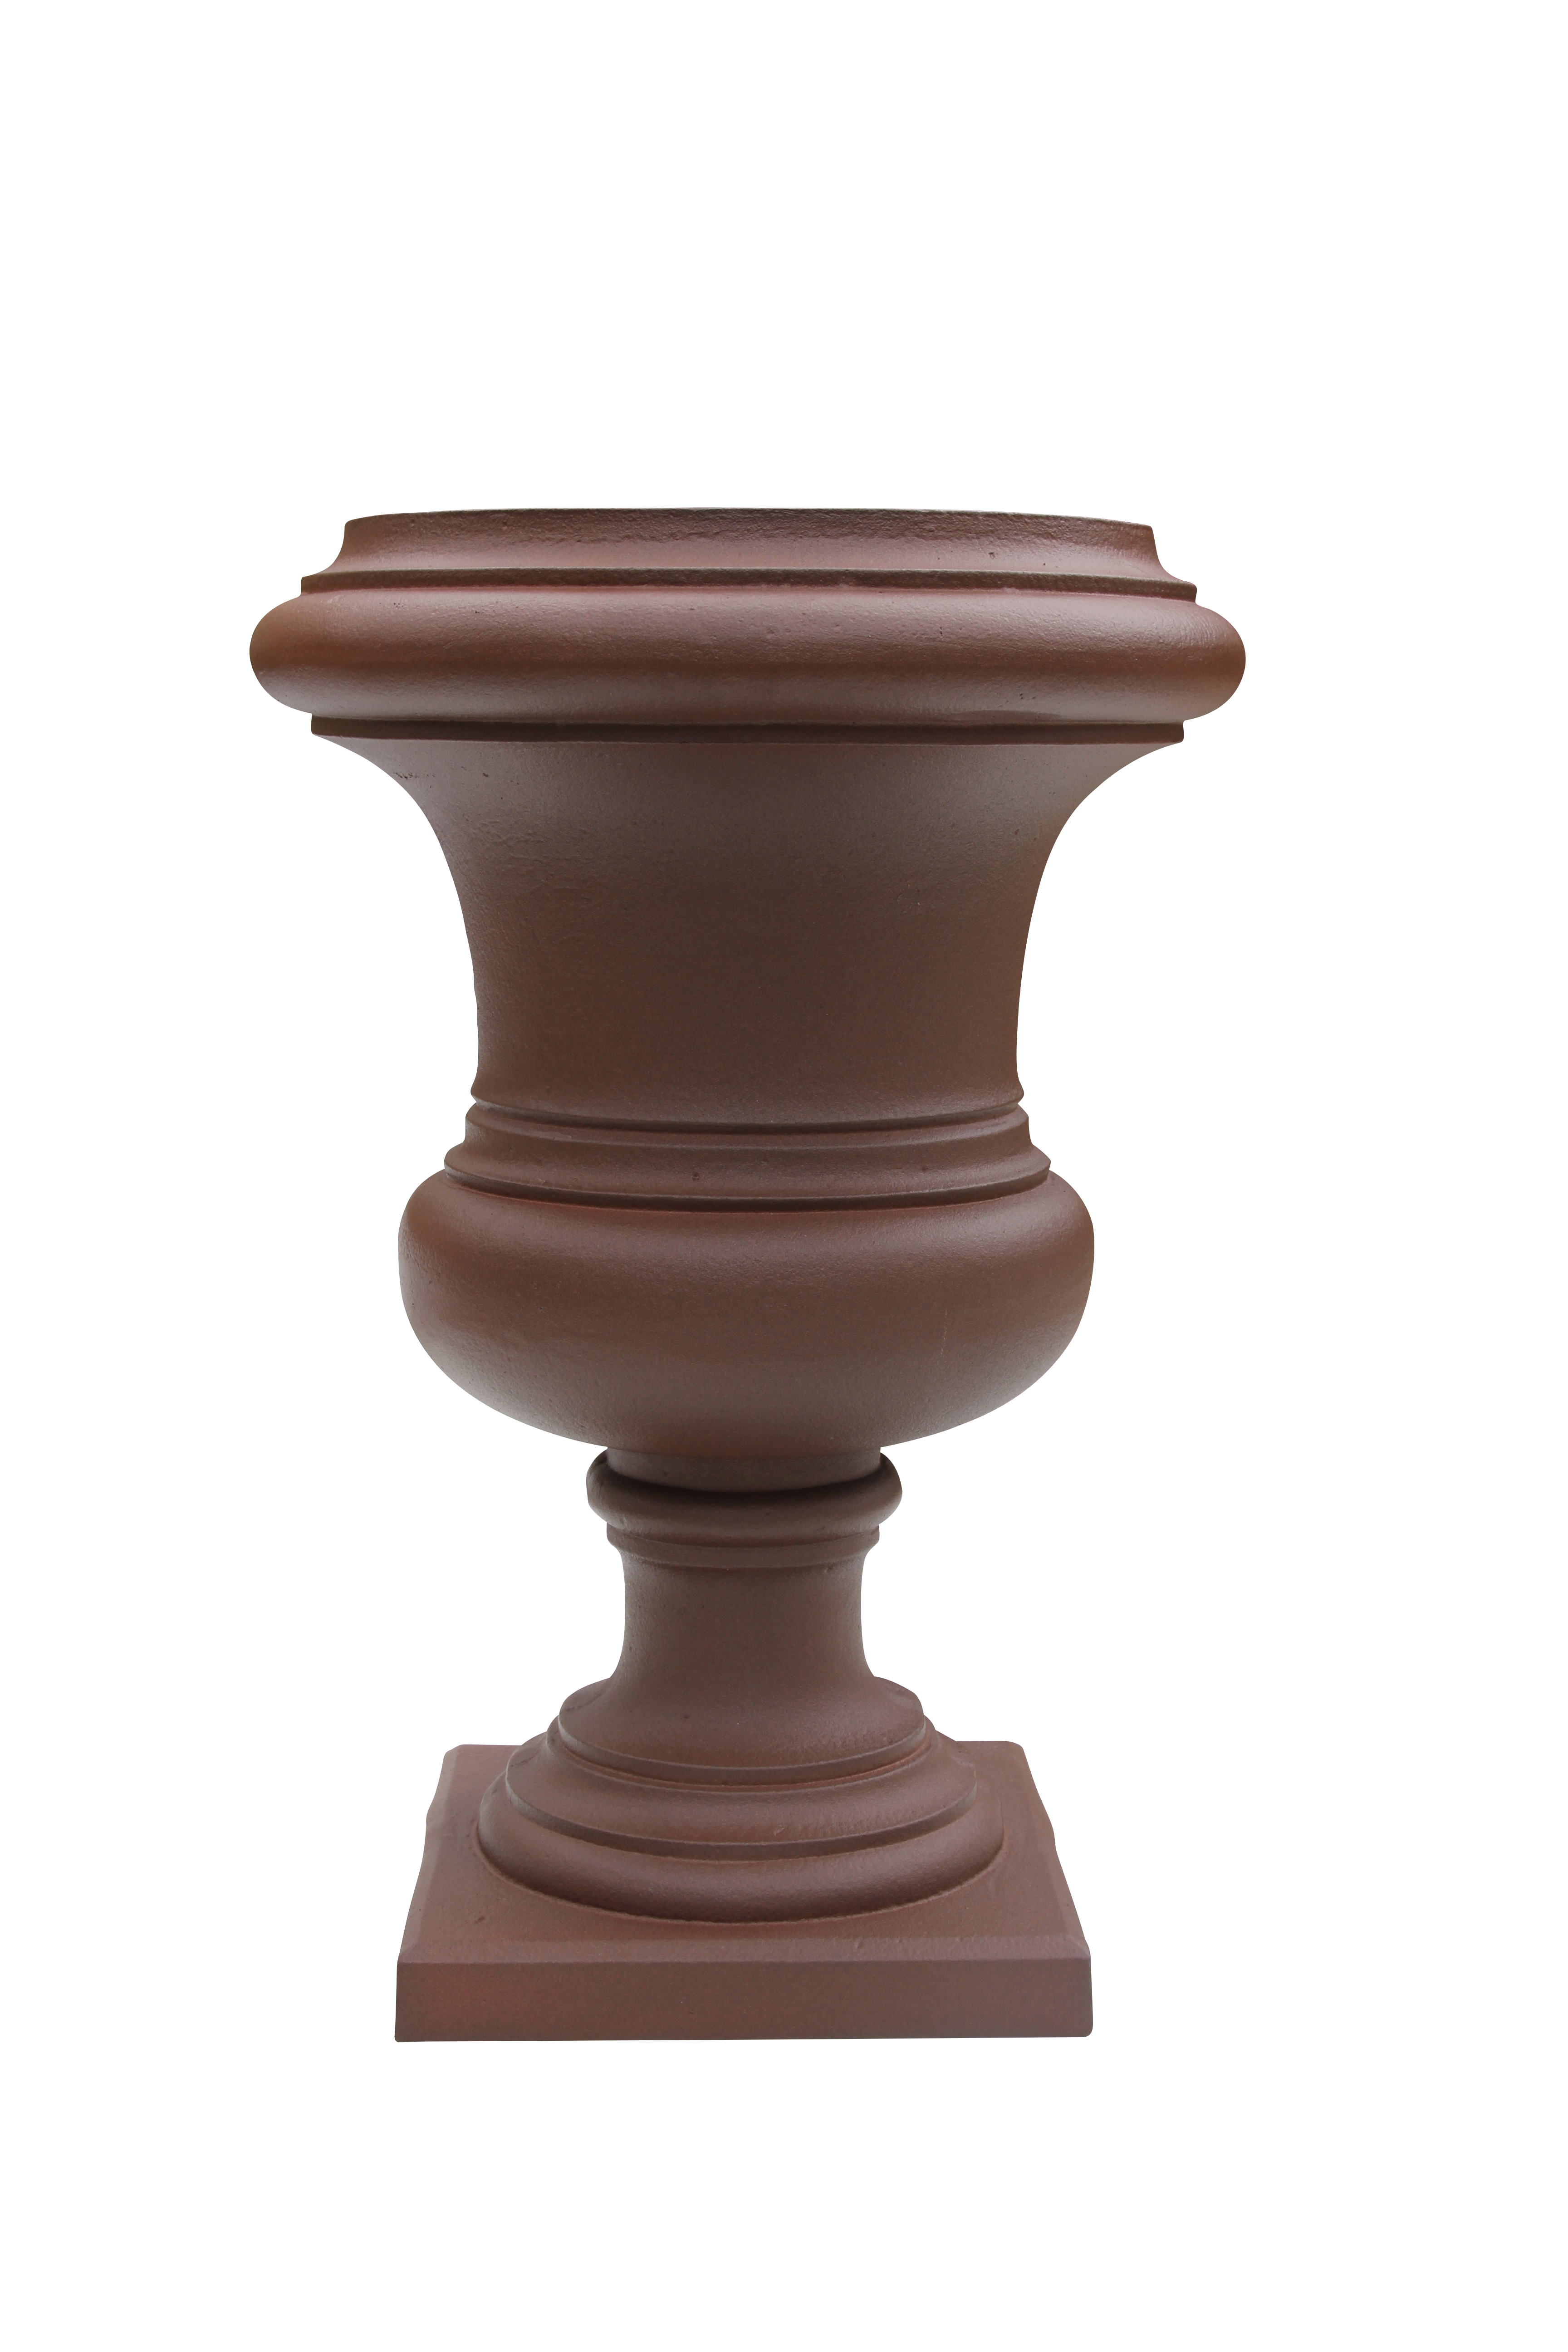 Vase à la française brun antique, dommartin